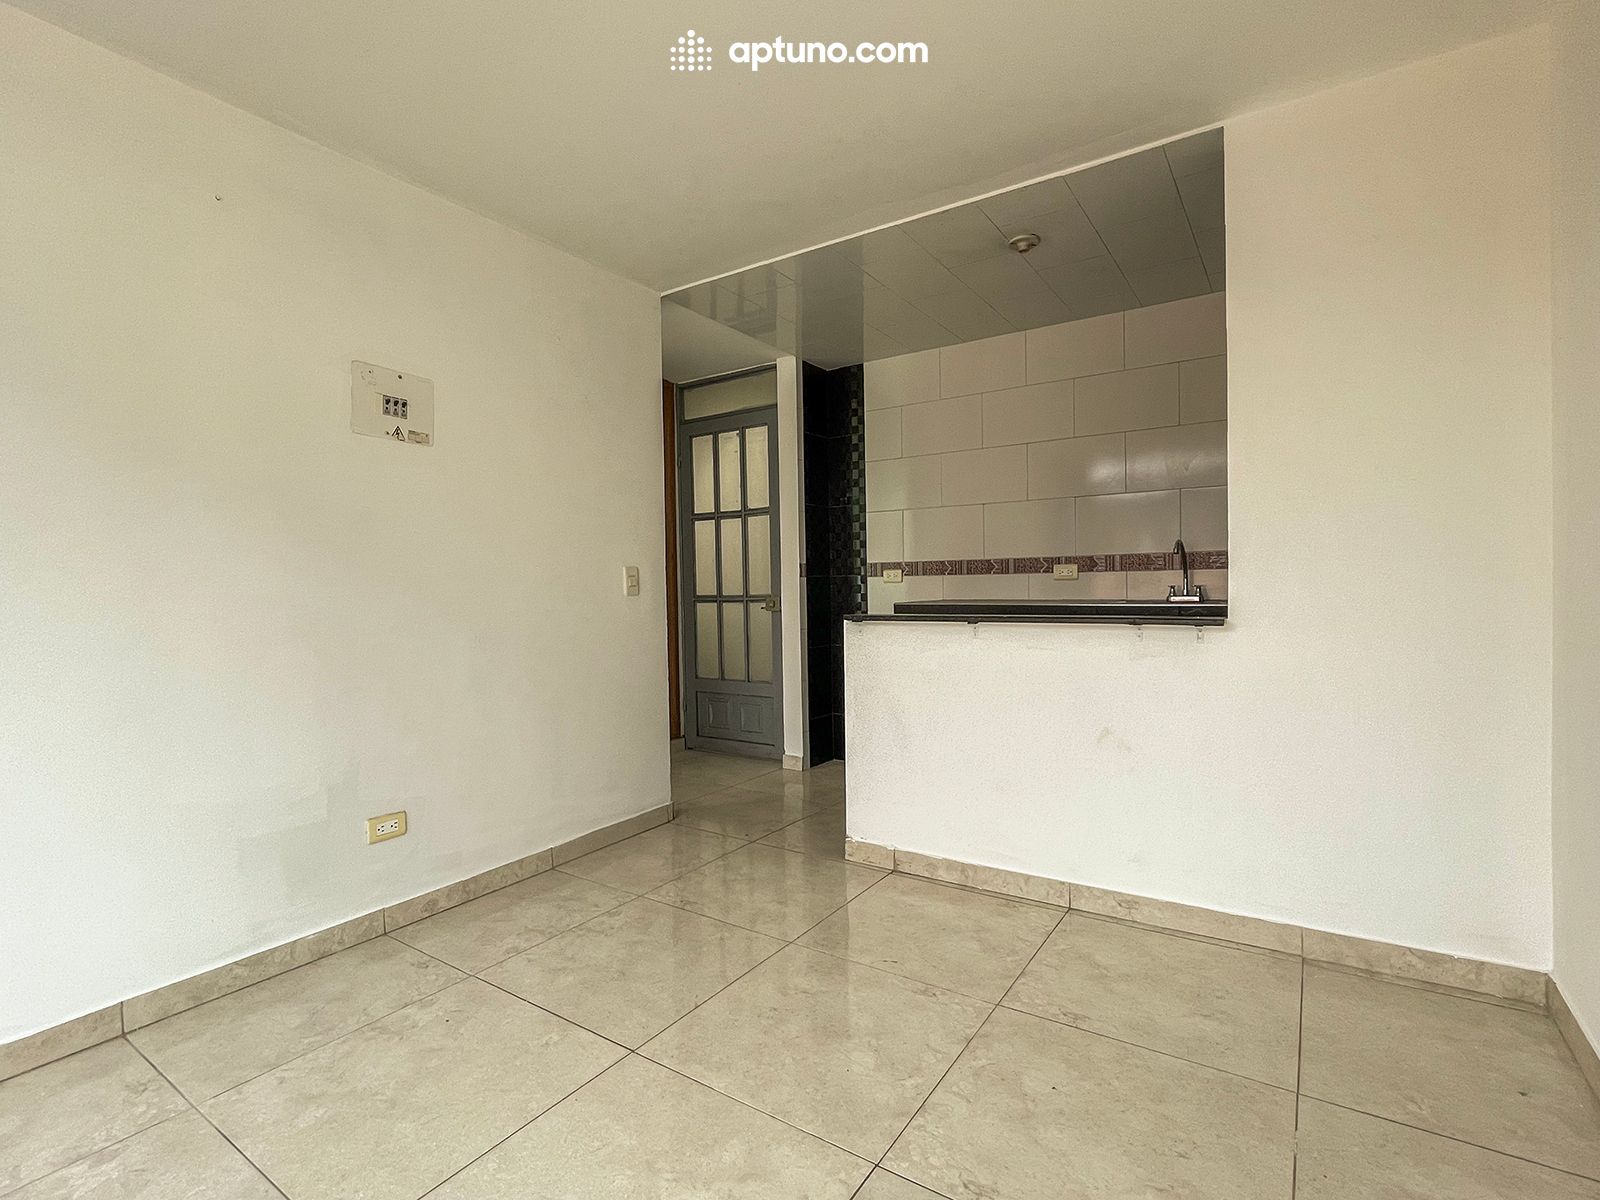 Apartamento en arriendo El Rincon de Santa Fe 30 m² - $ 600.000